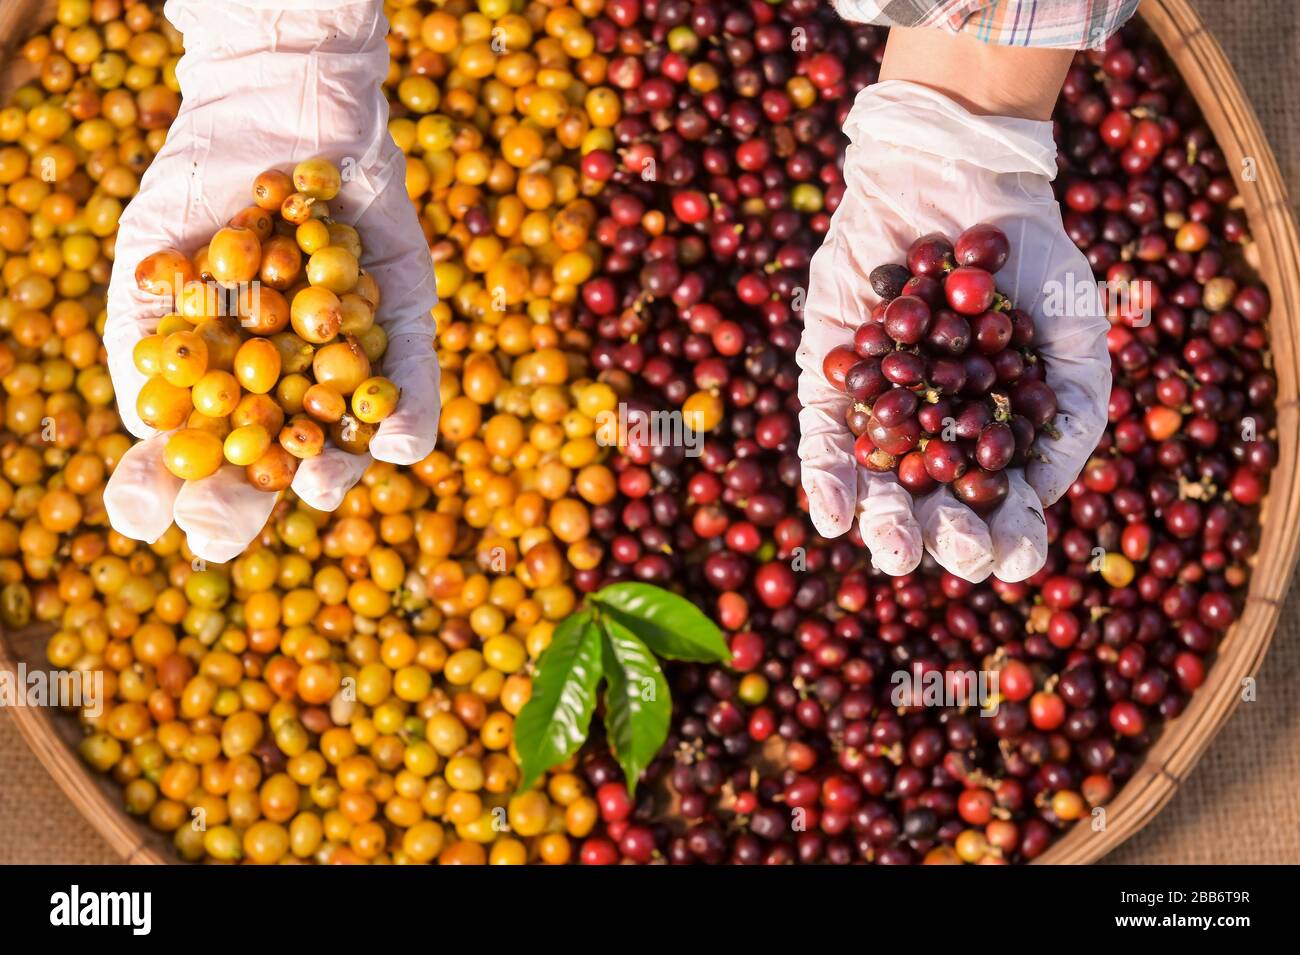 Mani umane che tengono chicchi di caffè arabica appena raccolti Foto Stock